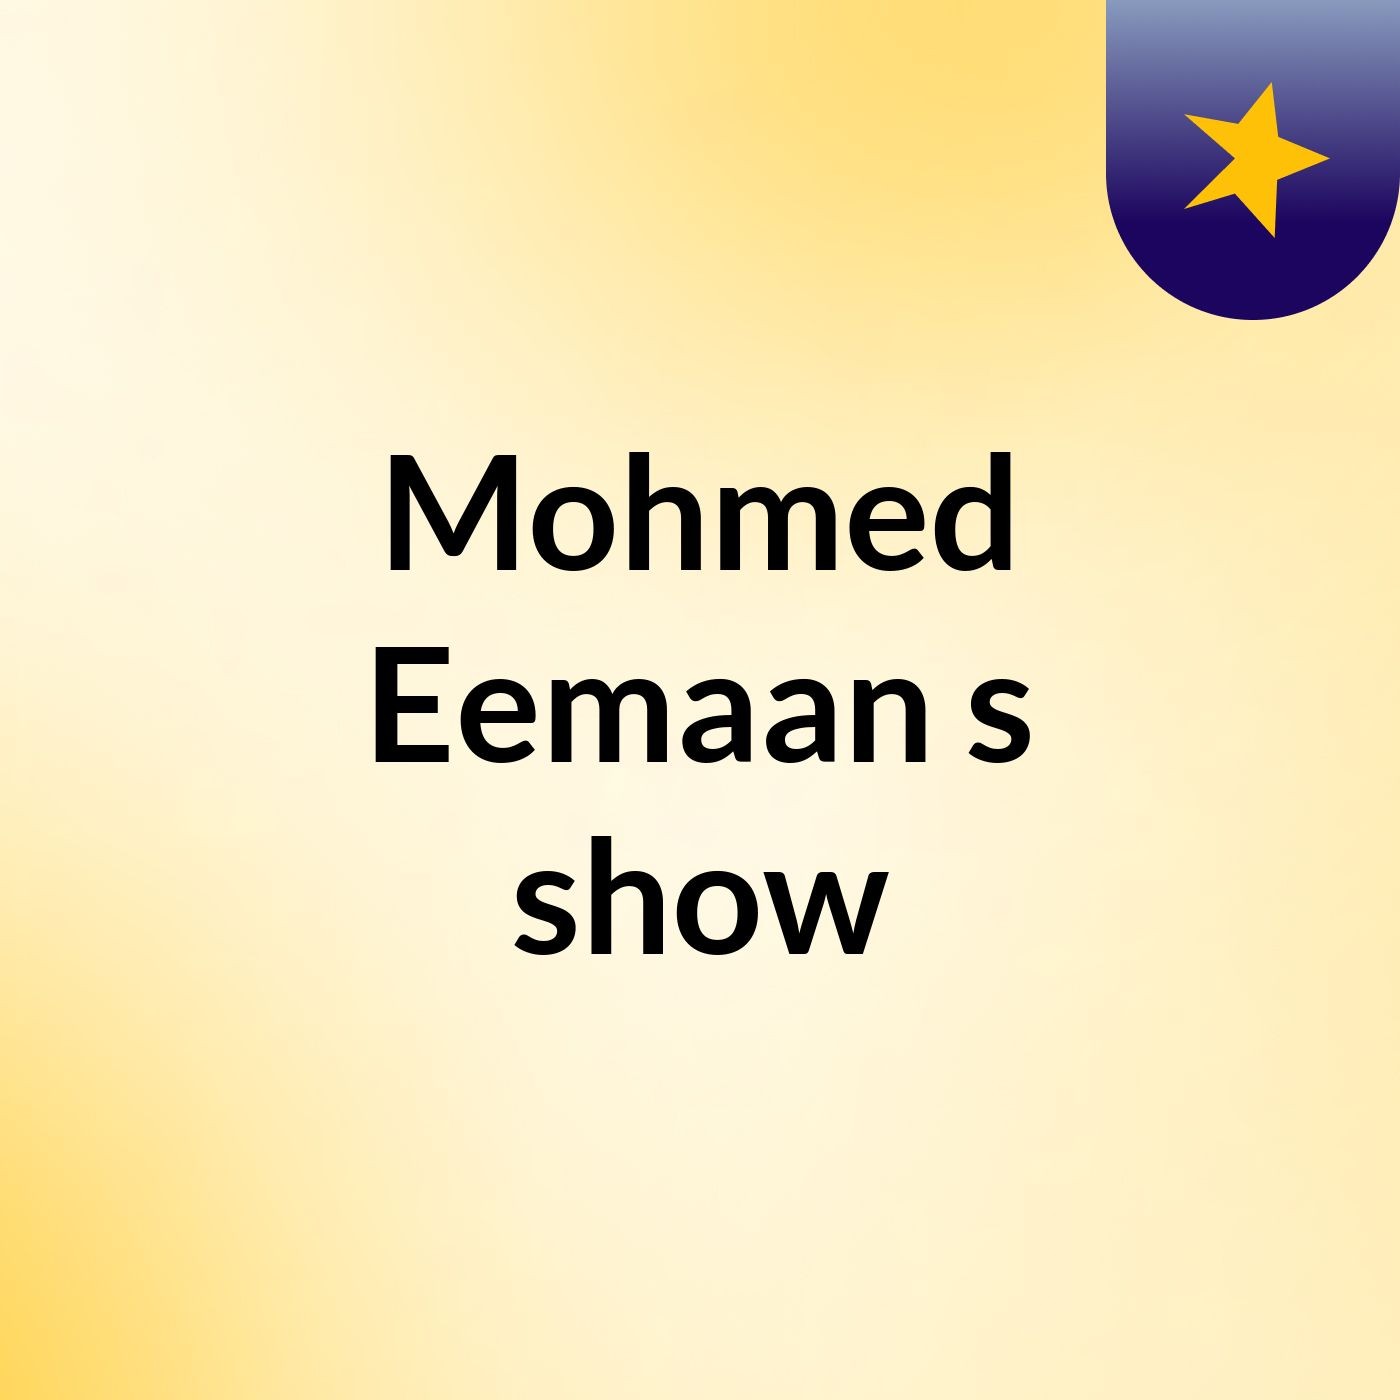 Mohmed Eemaan's show